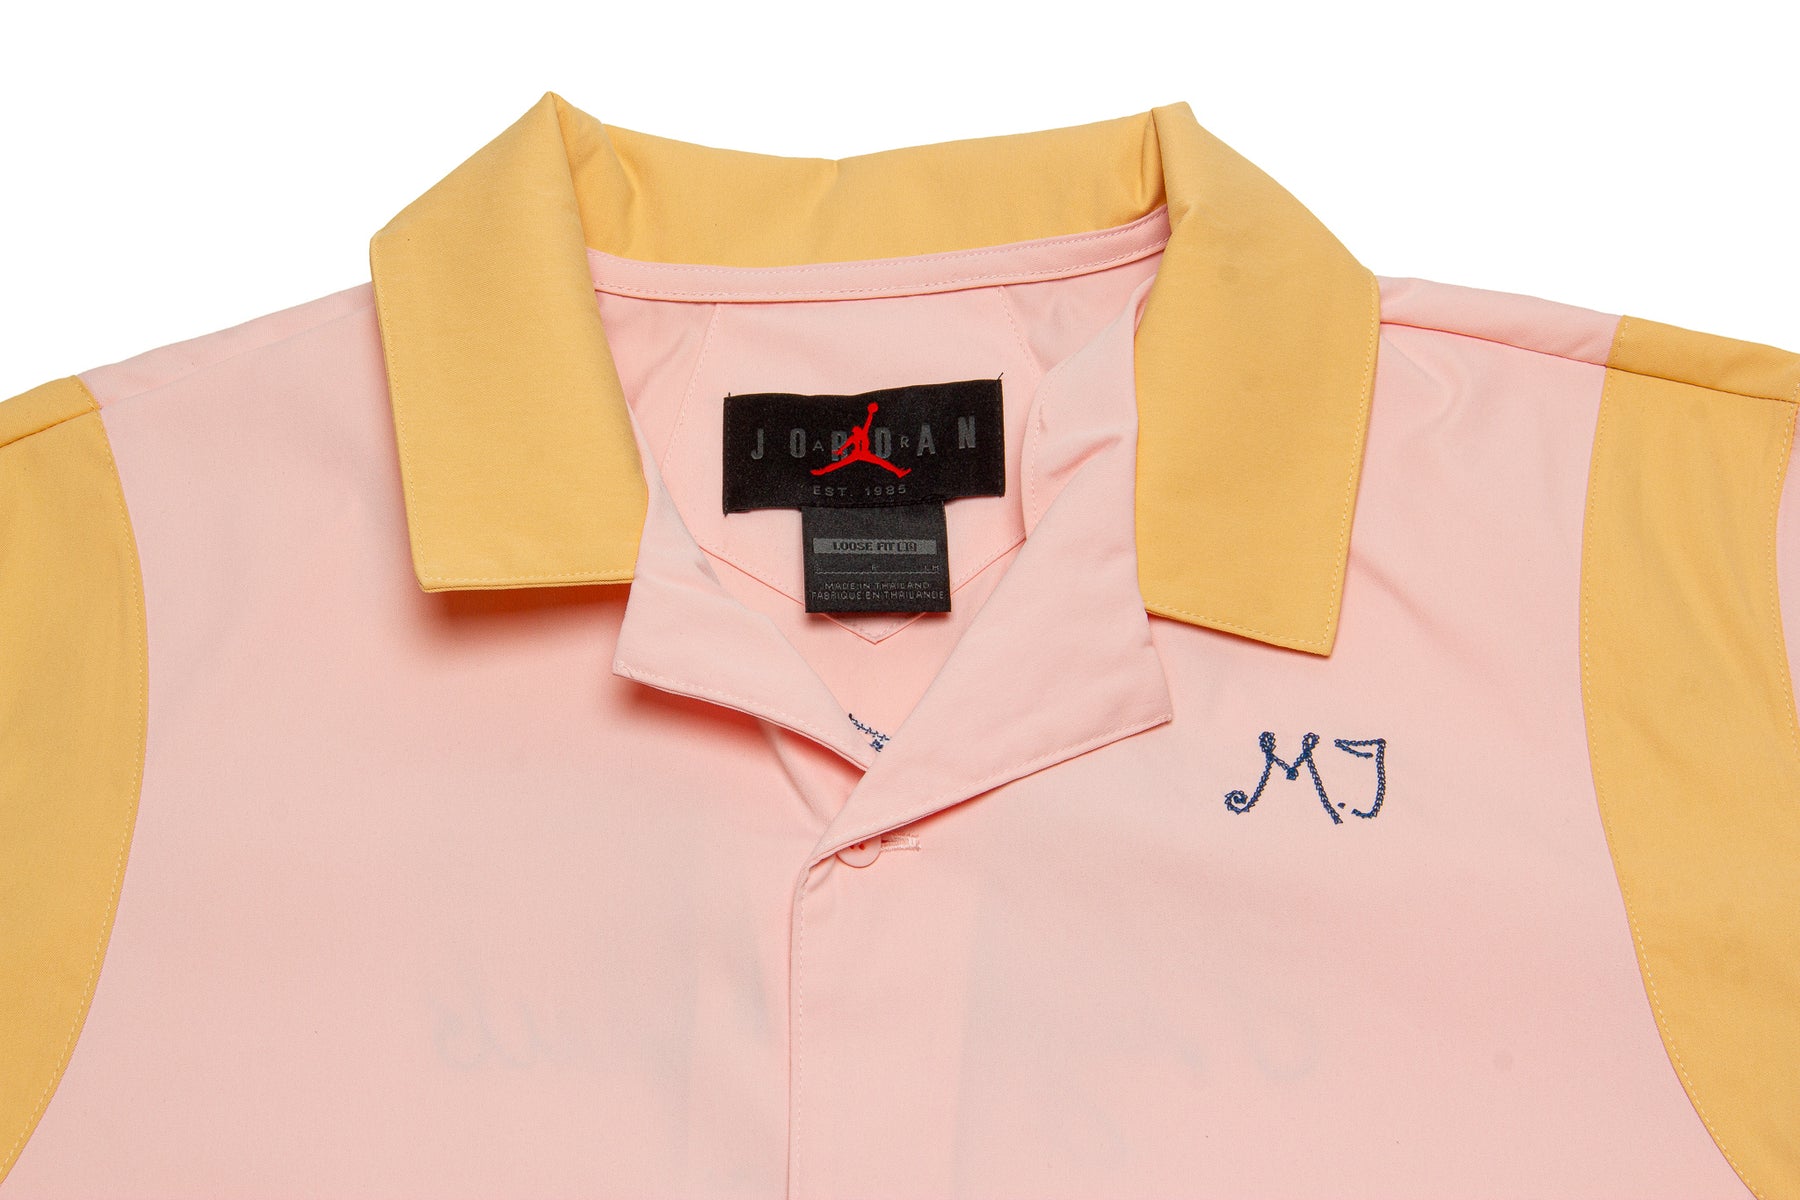 WMNS Jordan Button Up Shirt "Atmosphere"